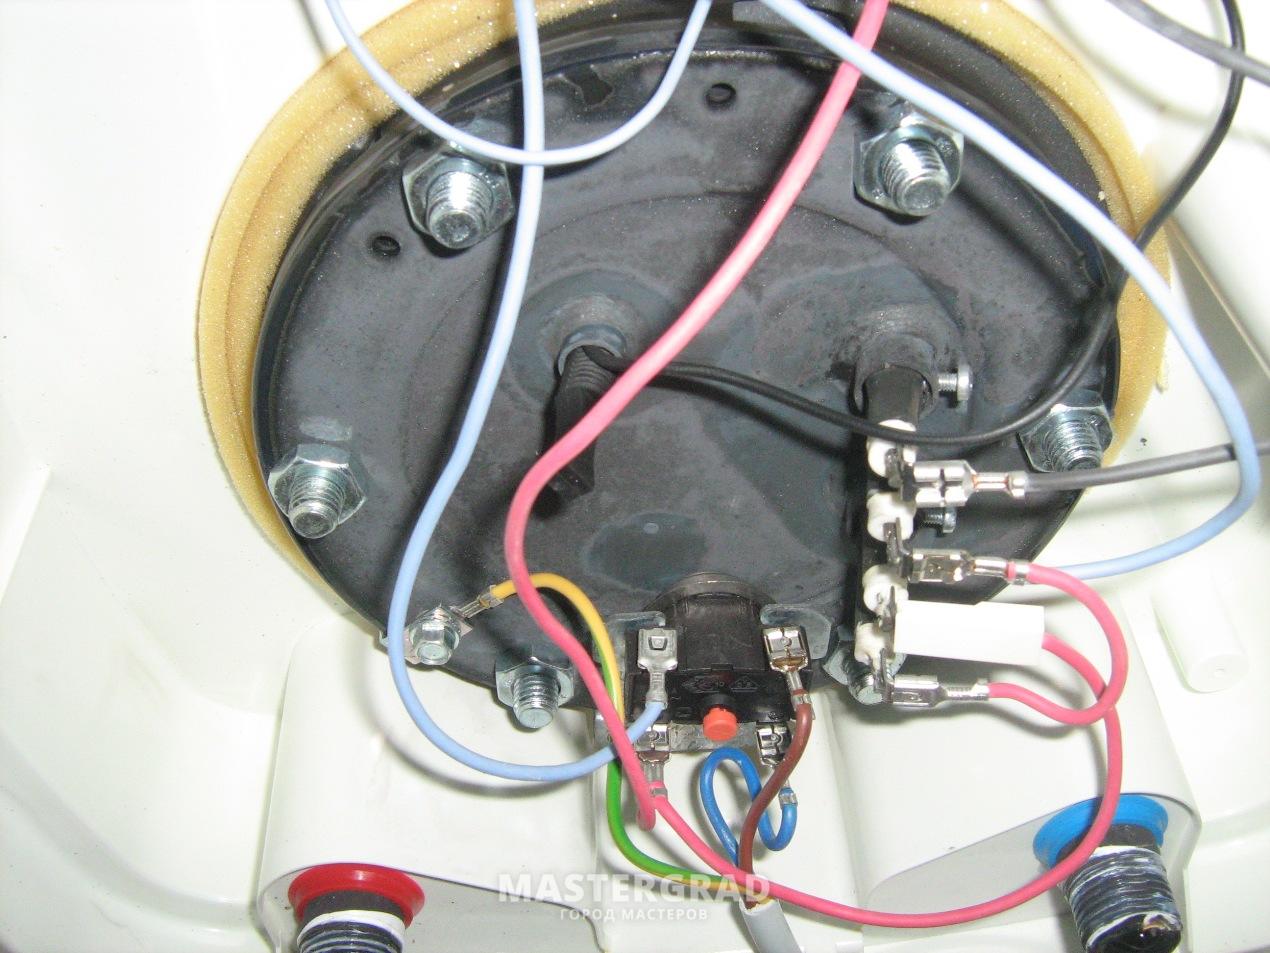 Водонагреватель не греет воду причины. Внутренности электроводонагревателя 3w50v. Тепловое реле в бойлер Эдисон. Панель включения водонагревателя. Перестал работать водонагреватель.